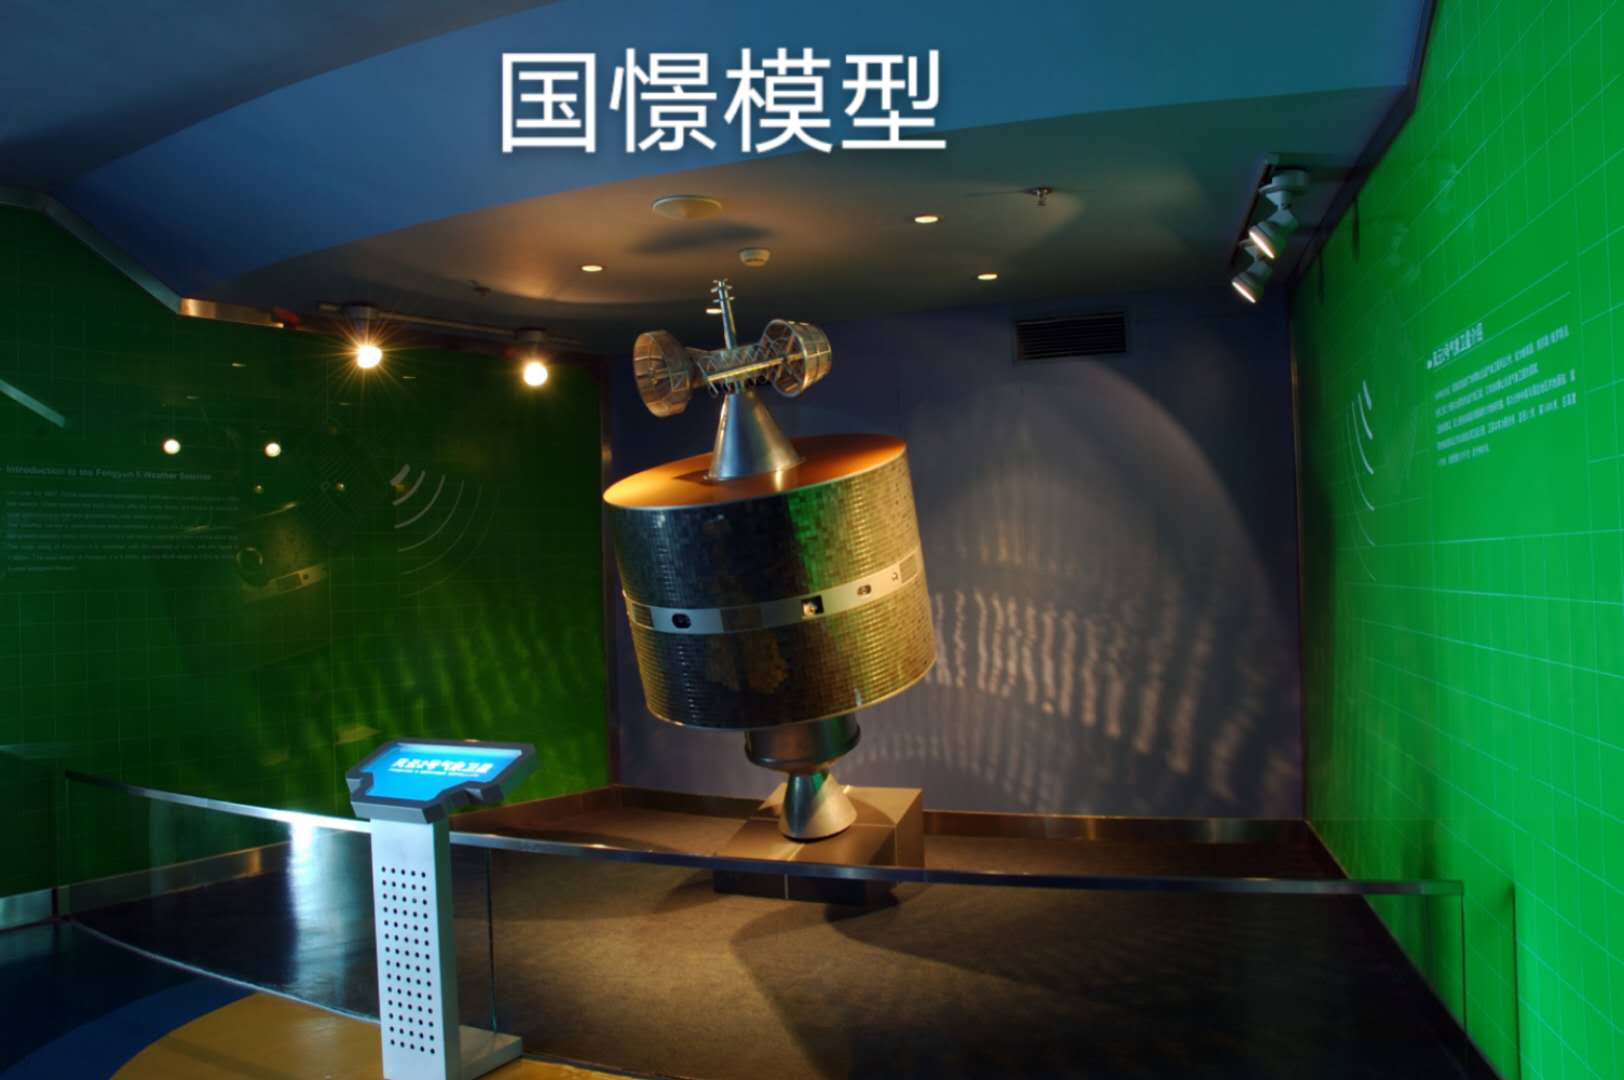 尤溪县航天模型